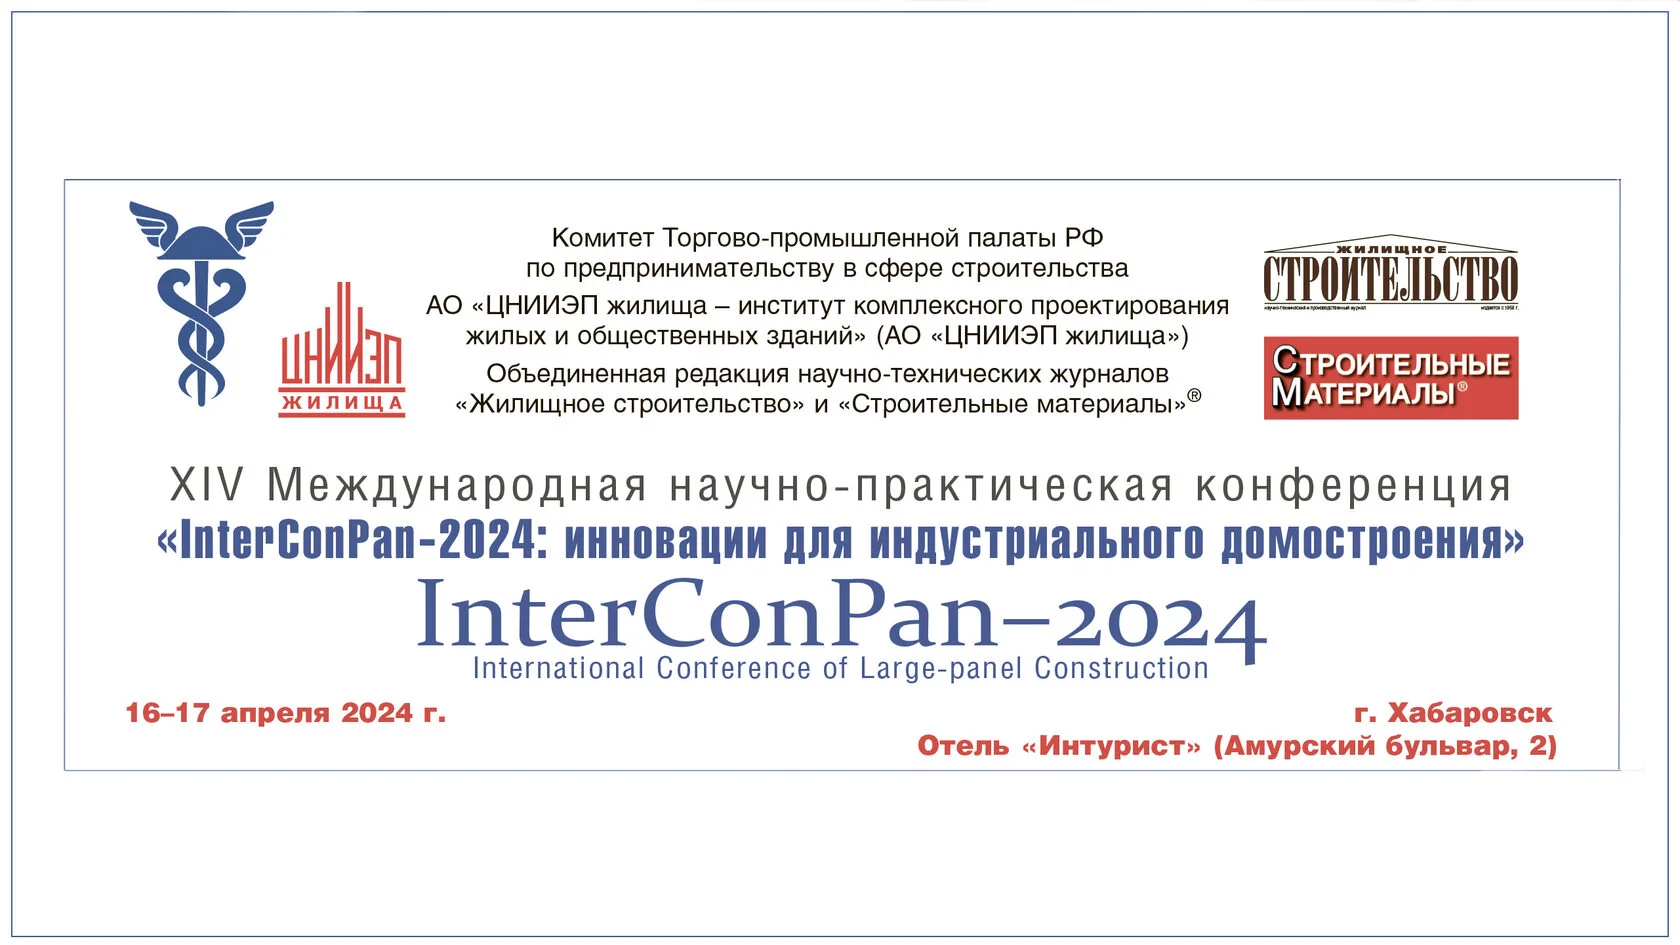 «М-Конструктор» приглашает на конференцию InterConPan!